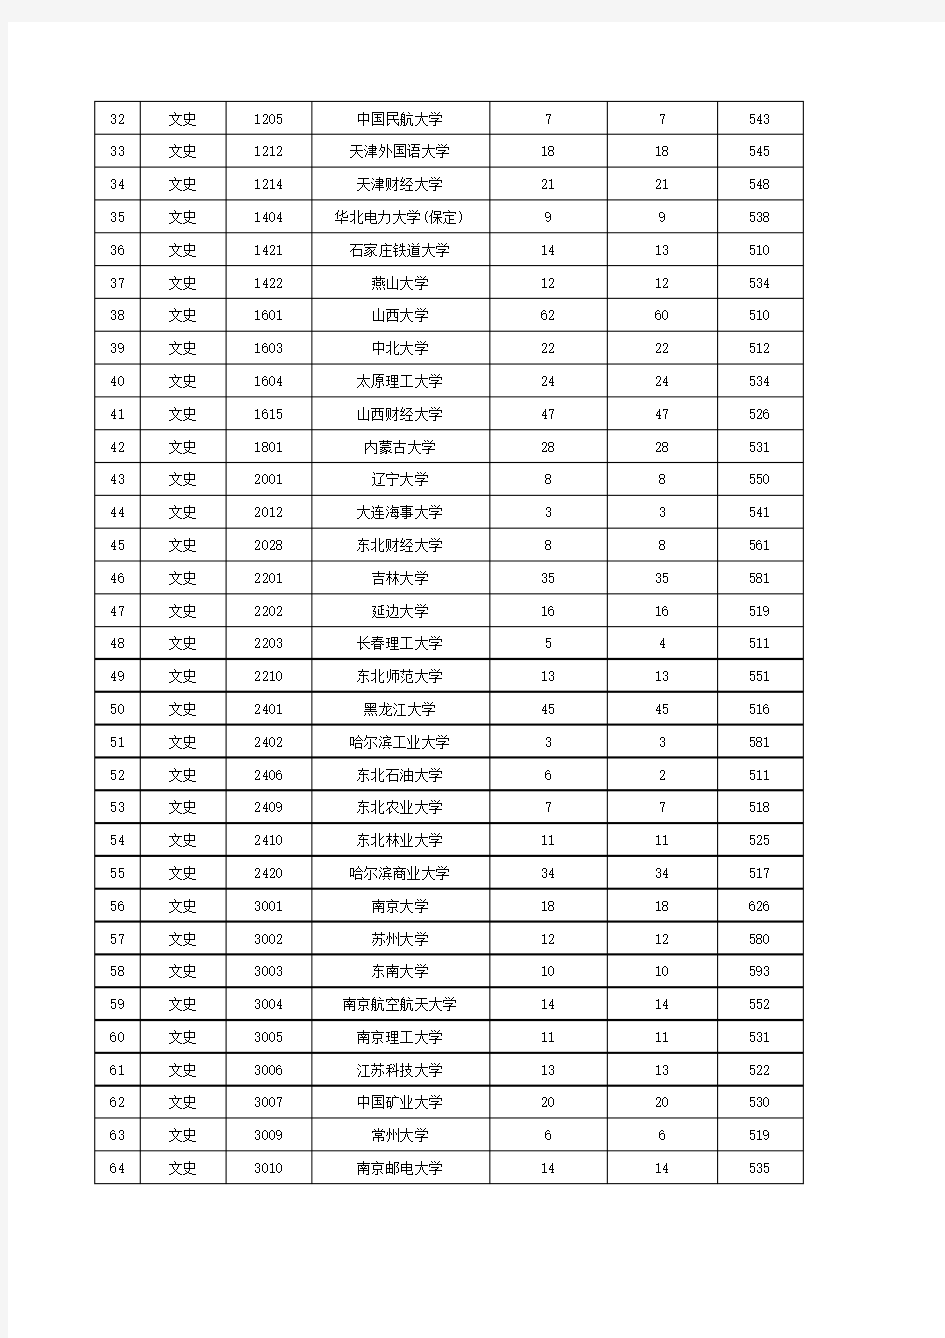 2015年陕西省普通高等学校招生一批本科文史类正式投档情况统计表